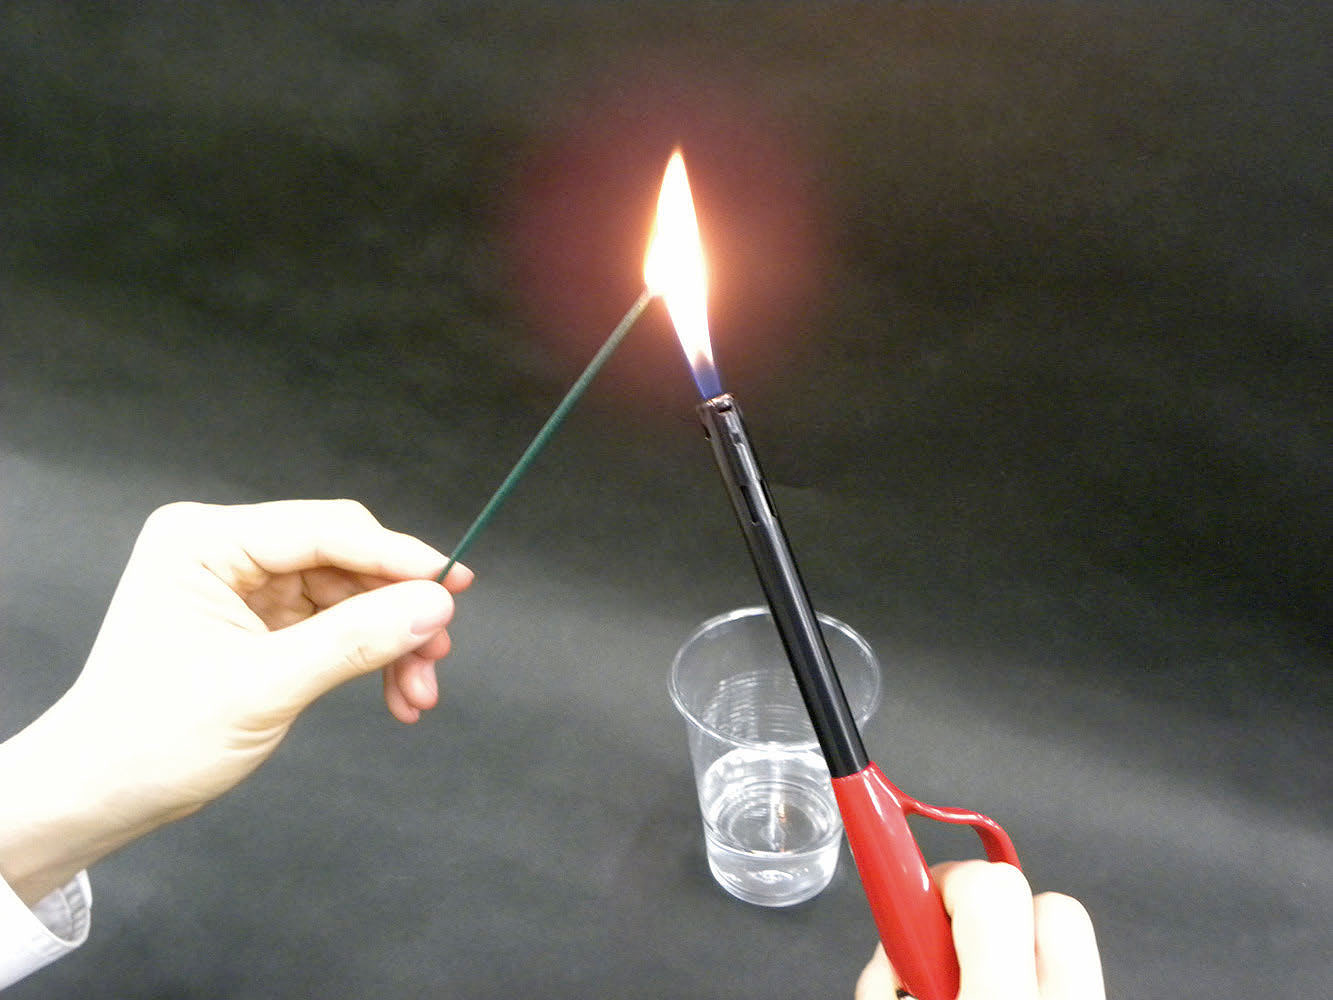 実験操作2: 線香に火をつける。　注意：燃えさし入れを近くに準備しておくこと。